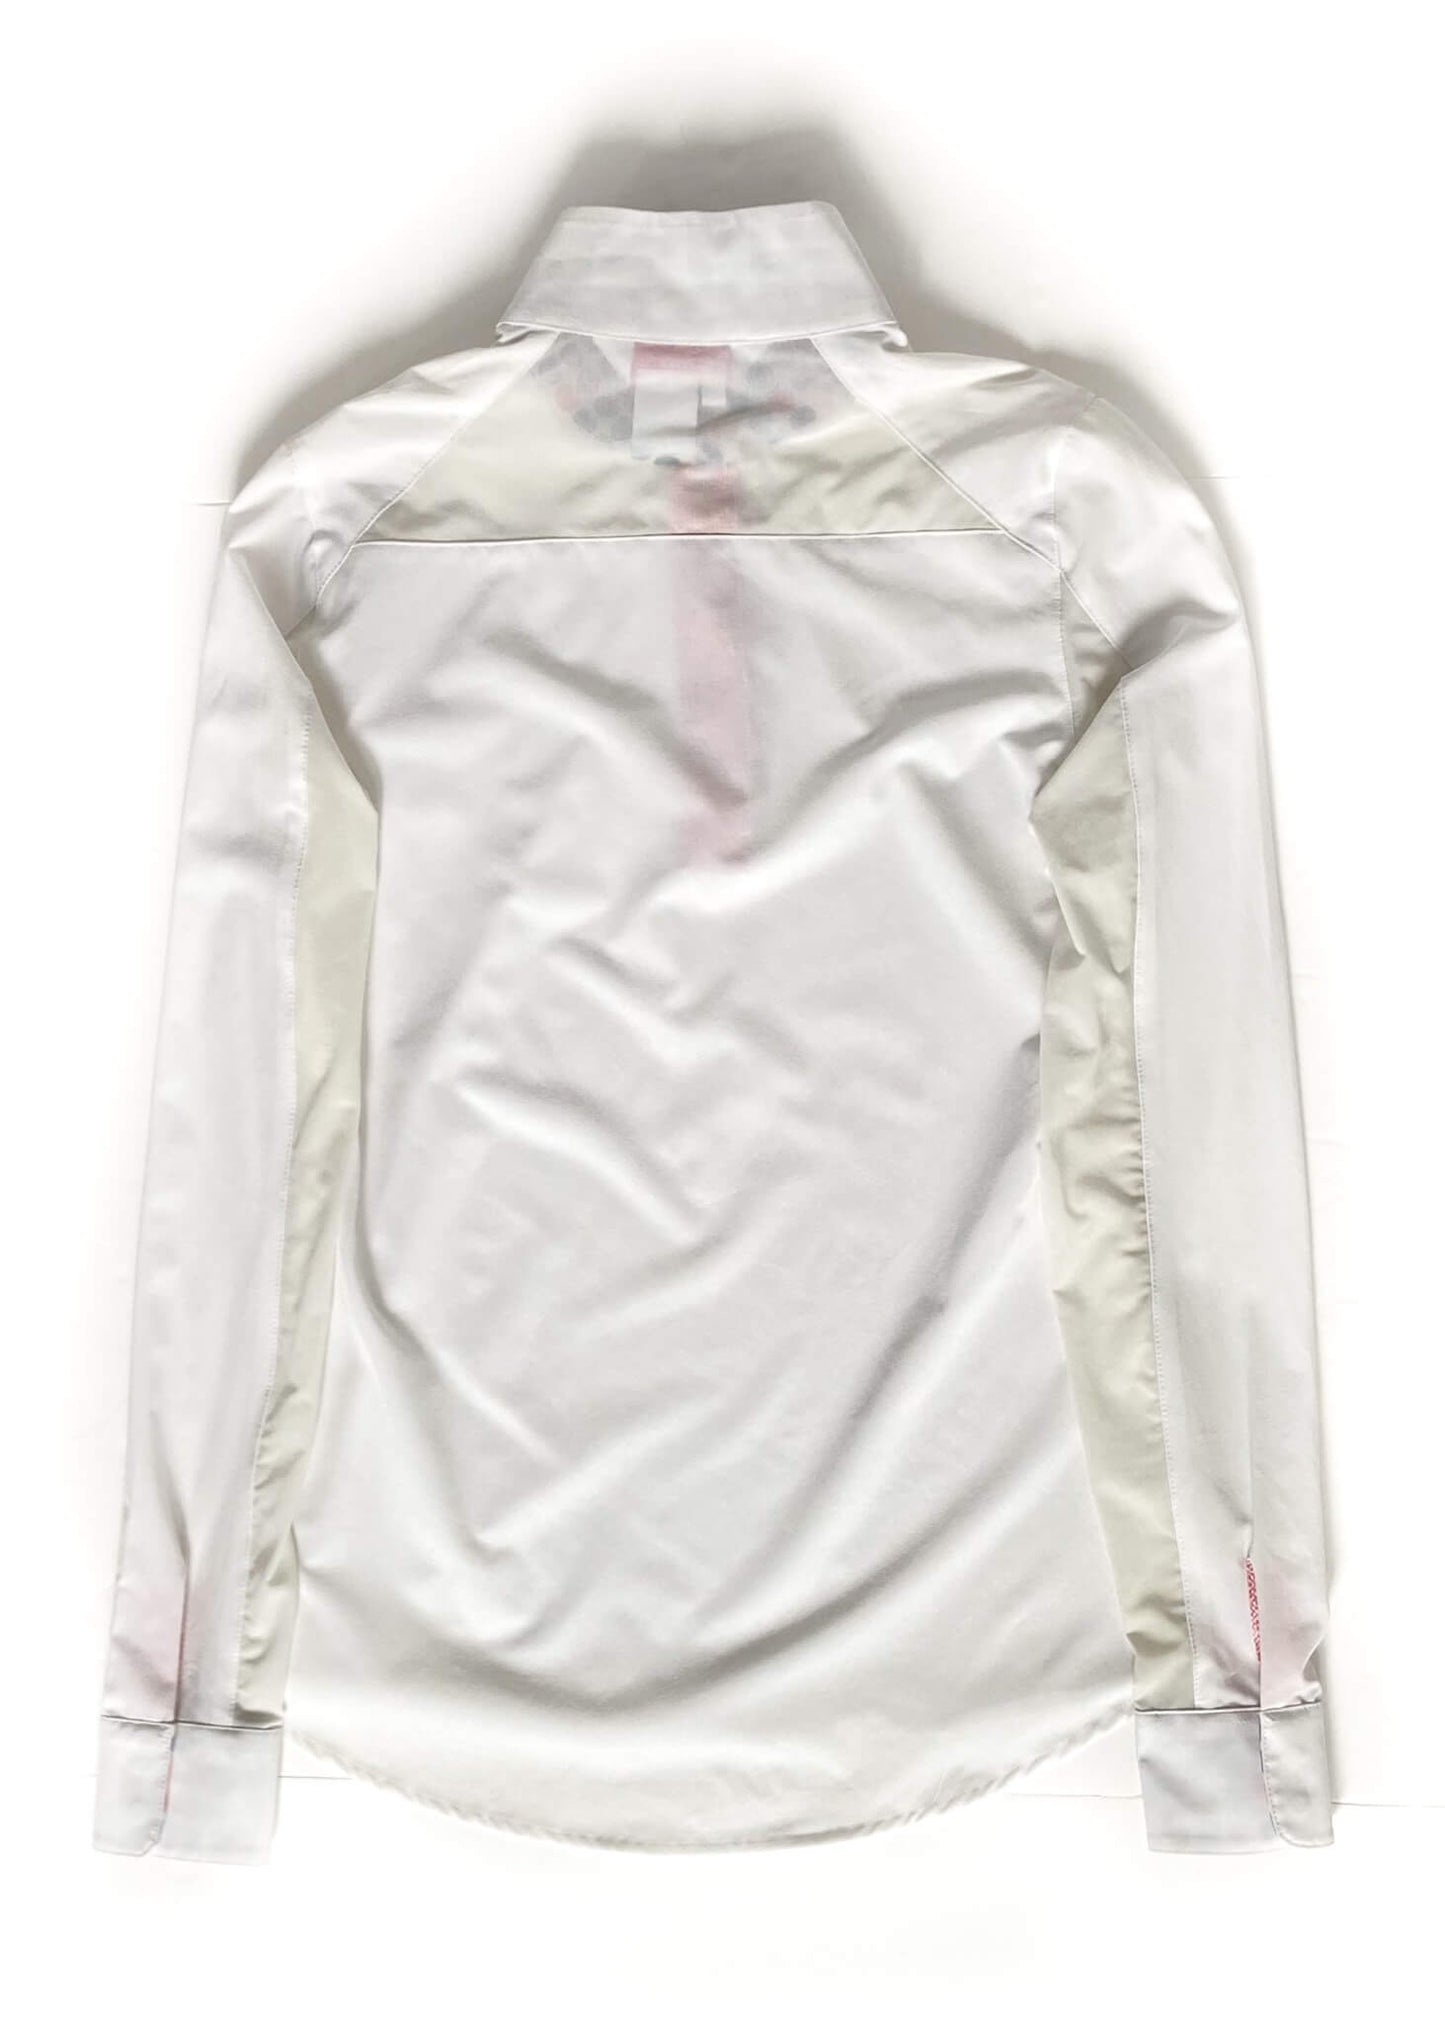 RJ Classics Prestige Show Shirt - White - Women's Medium